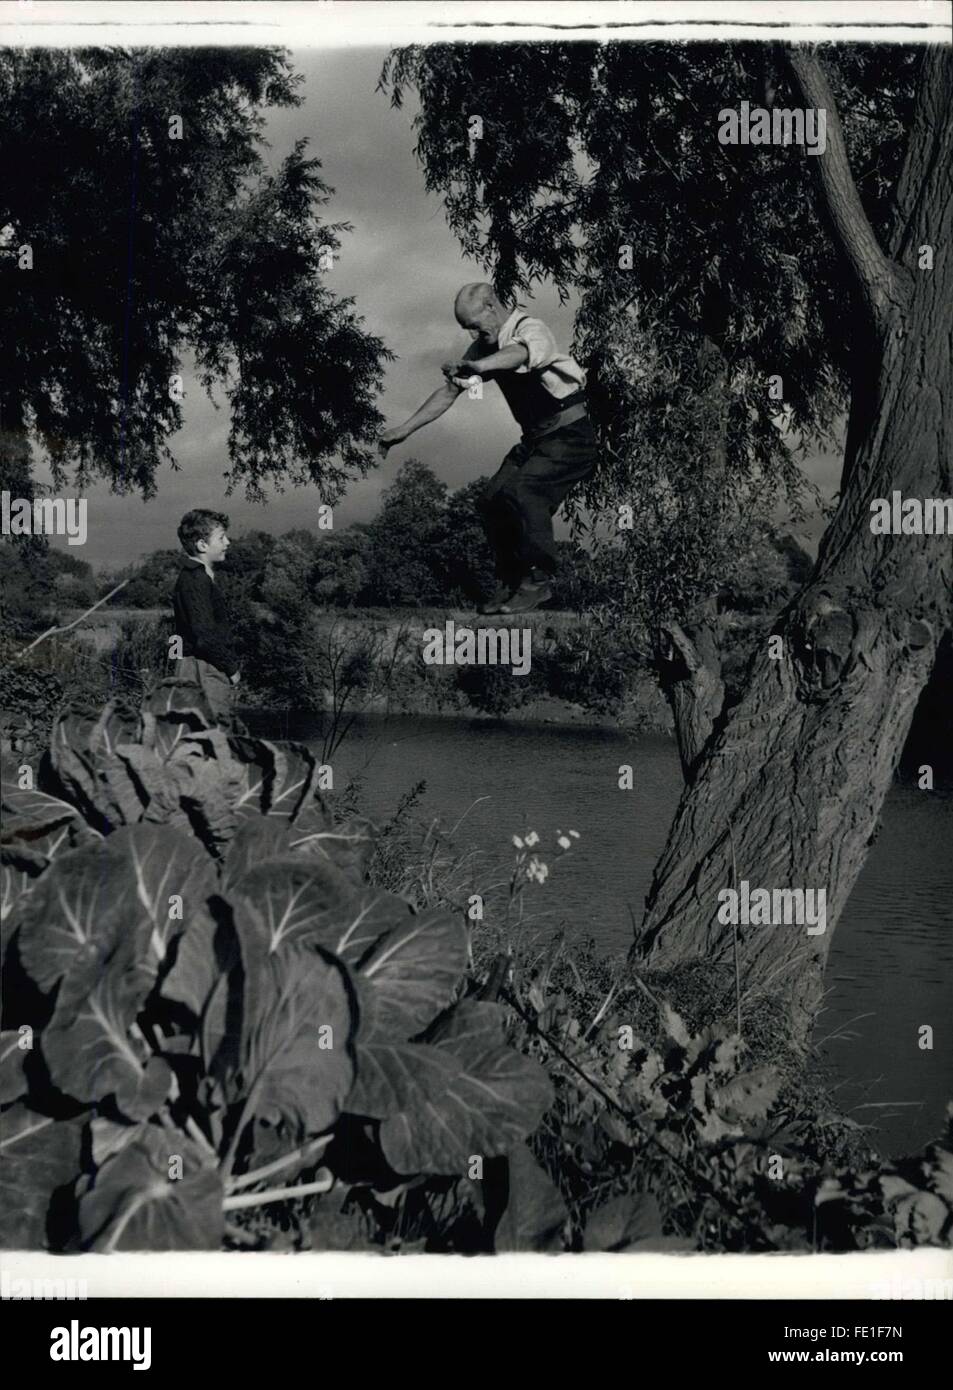 1958 - '' Tarzan'' Gunnell kommt von einer '' Uhr '': vom Zischen Flussufer Weidenbaum, Frank Gunnell Jur Wohnheim nach einem Zwischenspiel und Fluss zu beobachten. Sein Neffe - Uhren, bei einem Besuch von Worcester - ihn. © Keystone Bilder USA/ZUMAPRESS.com/Alamy Live-Nachrichten Stockfoto